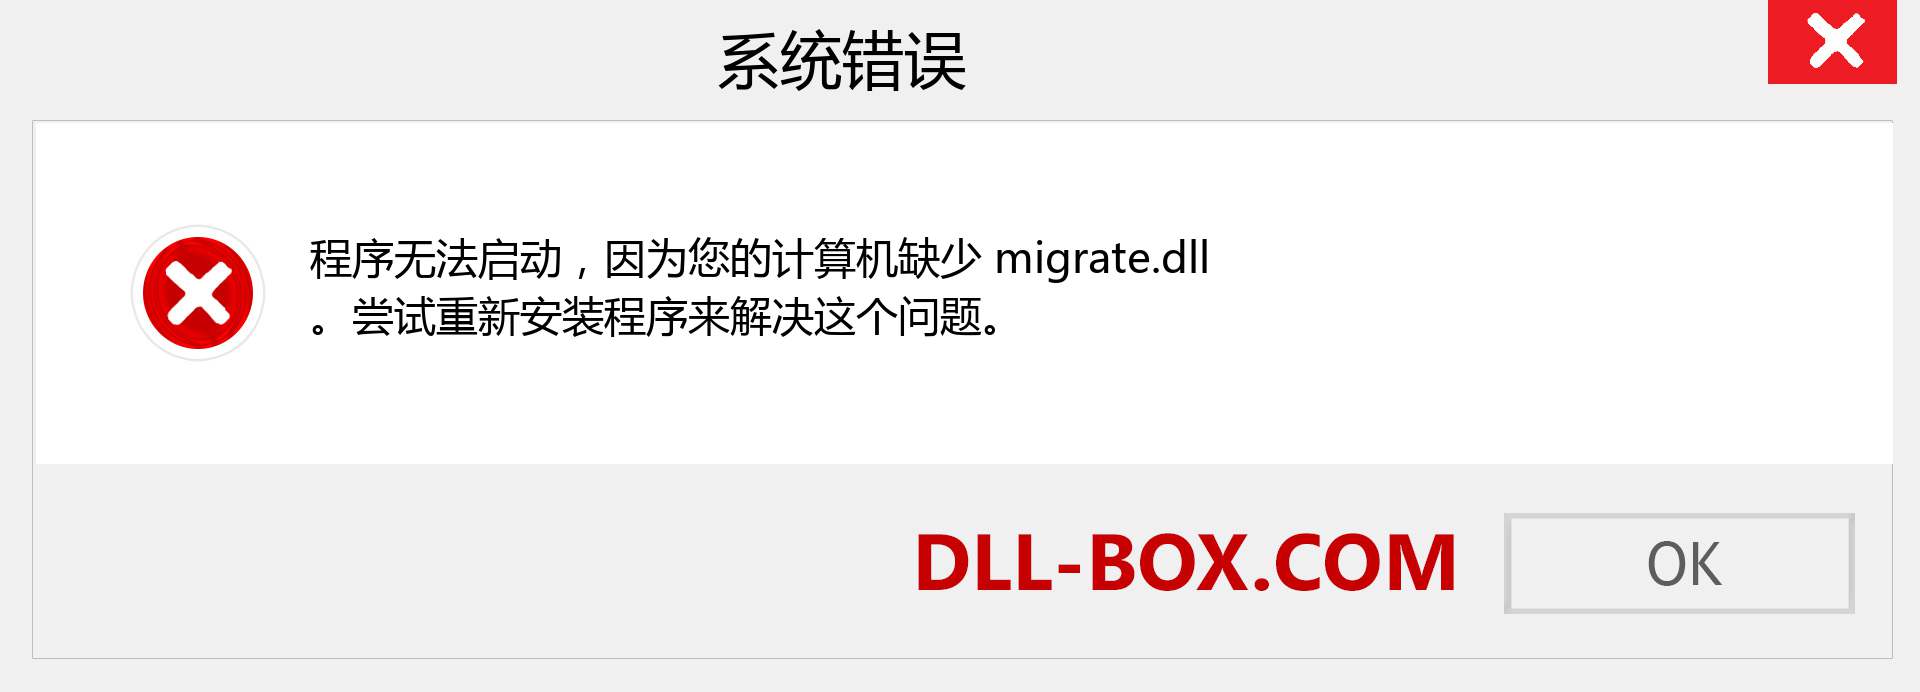 migrate.dll 文件丢失？。 适用于 Windows 7、8、10 的下载 - 修复 Windows、照片、图像上的 migrate dll 丢失错误